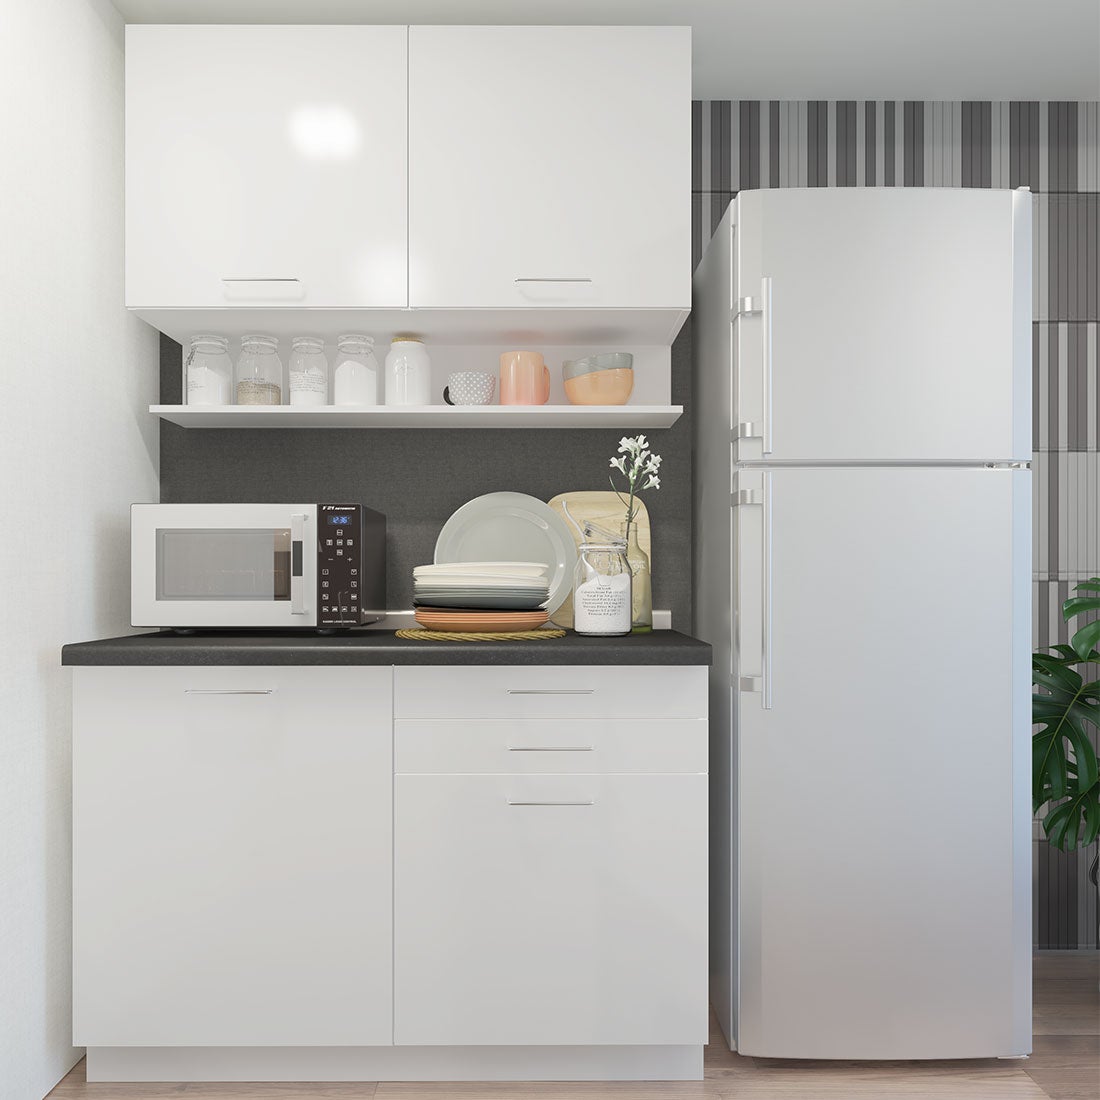 ห้องครัวขนาดกะทัดรัดและครัวสำเร็จรูป ขนาด 120 ซม. รุ่น Kourmet สีขาว Hi-Gloss ท็อป HPL01